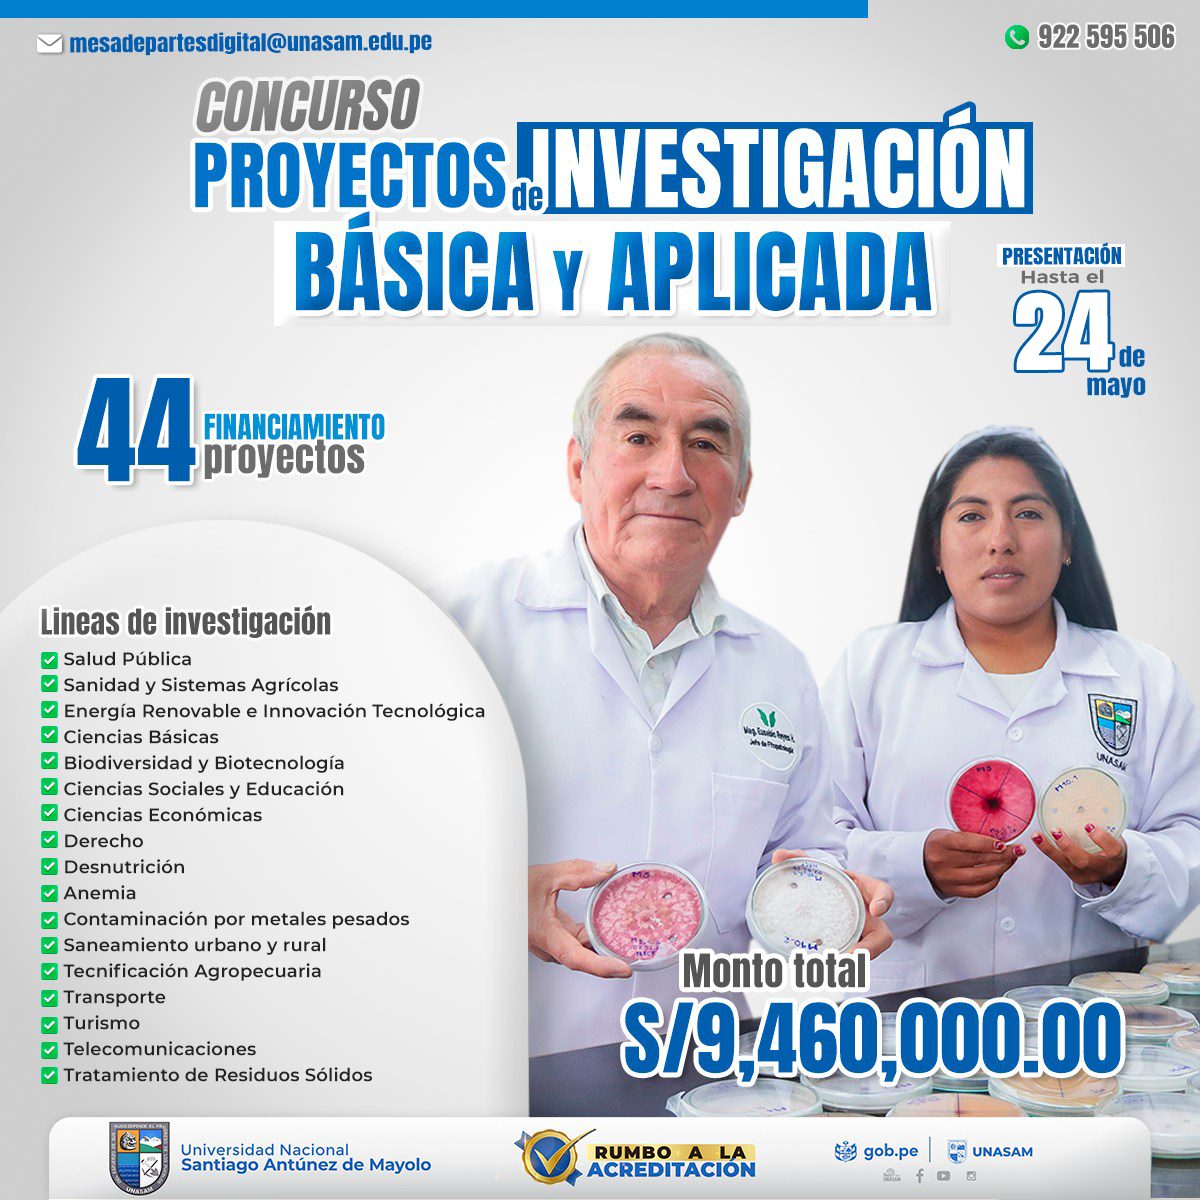  														CONCURSO DE PROYECTOS DE INVESTIGACIÓN BÁSICA Y APLICADA
														